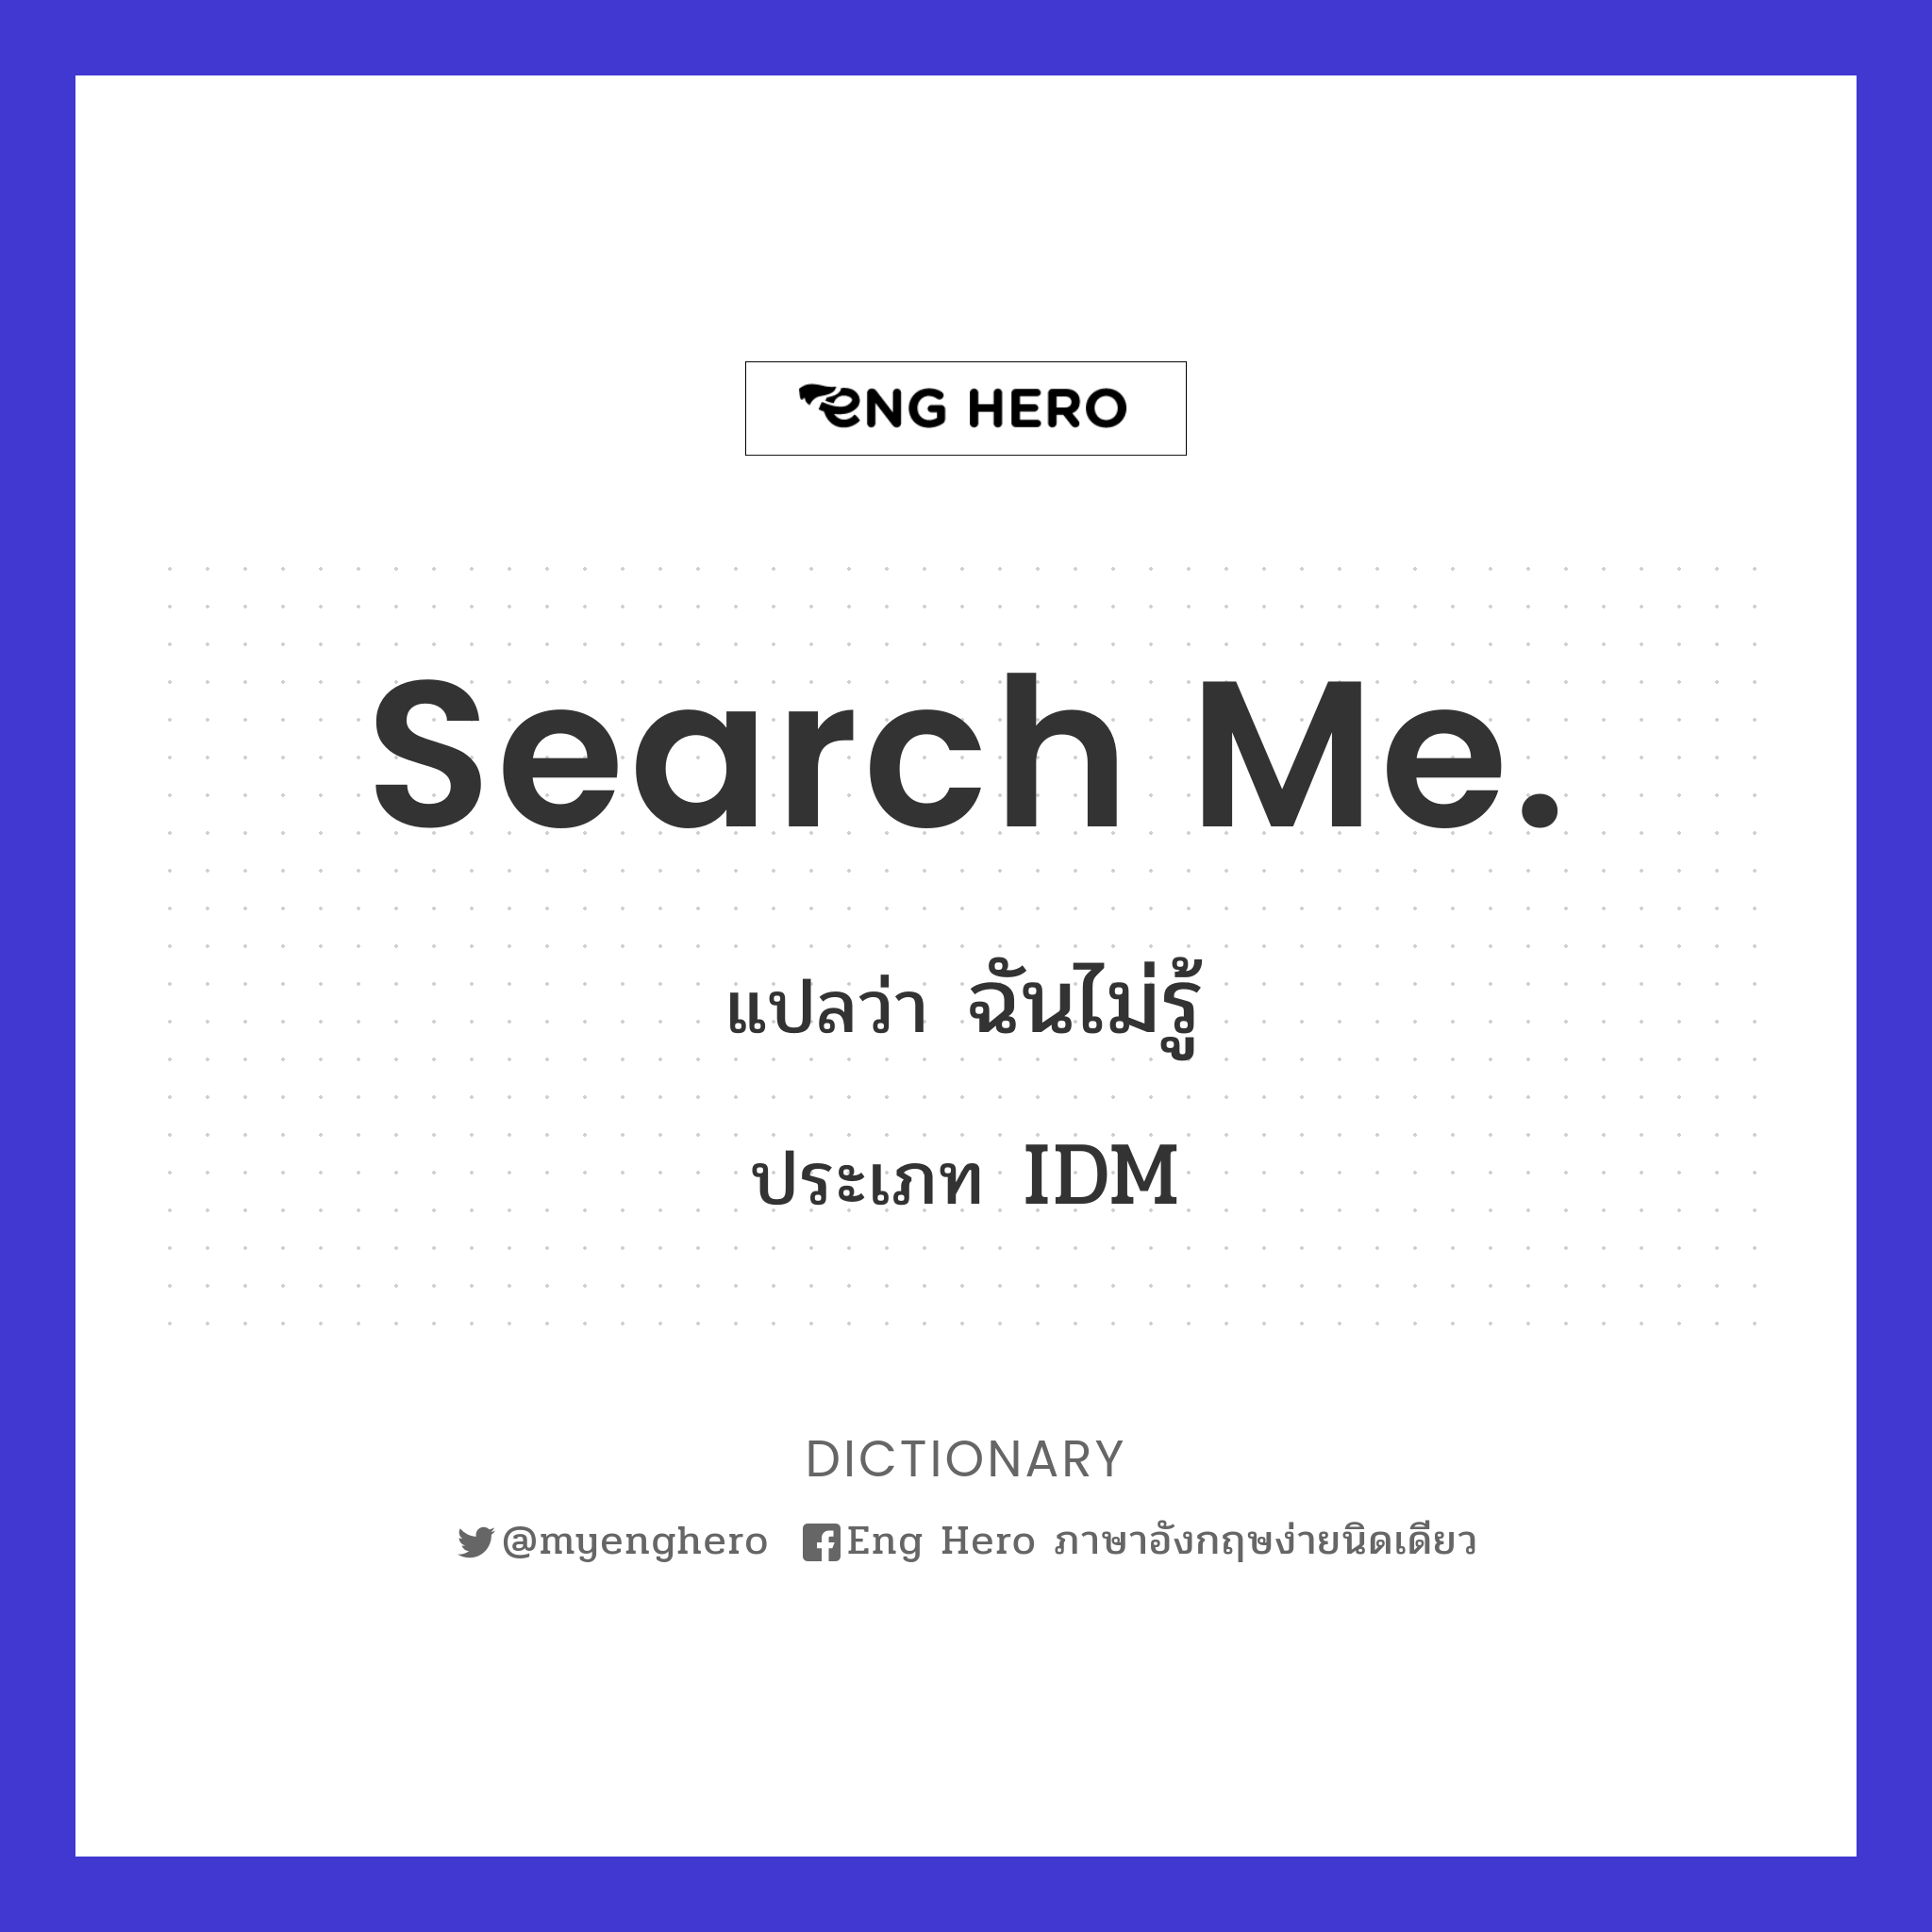 Search me.